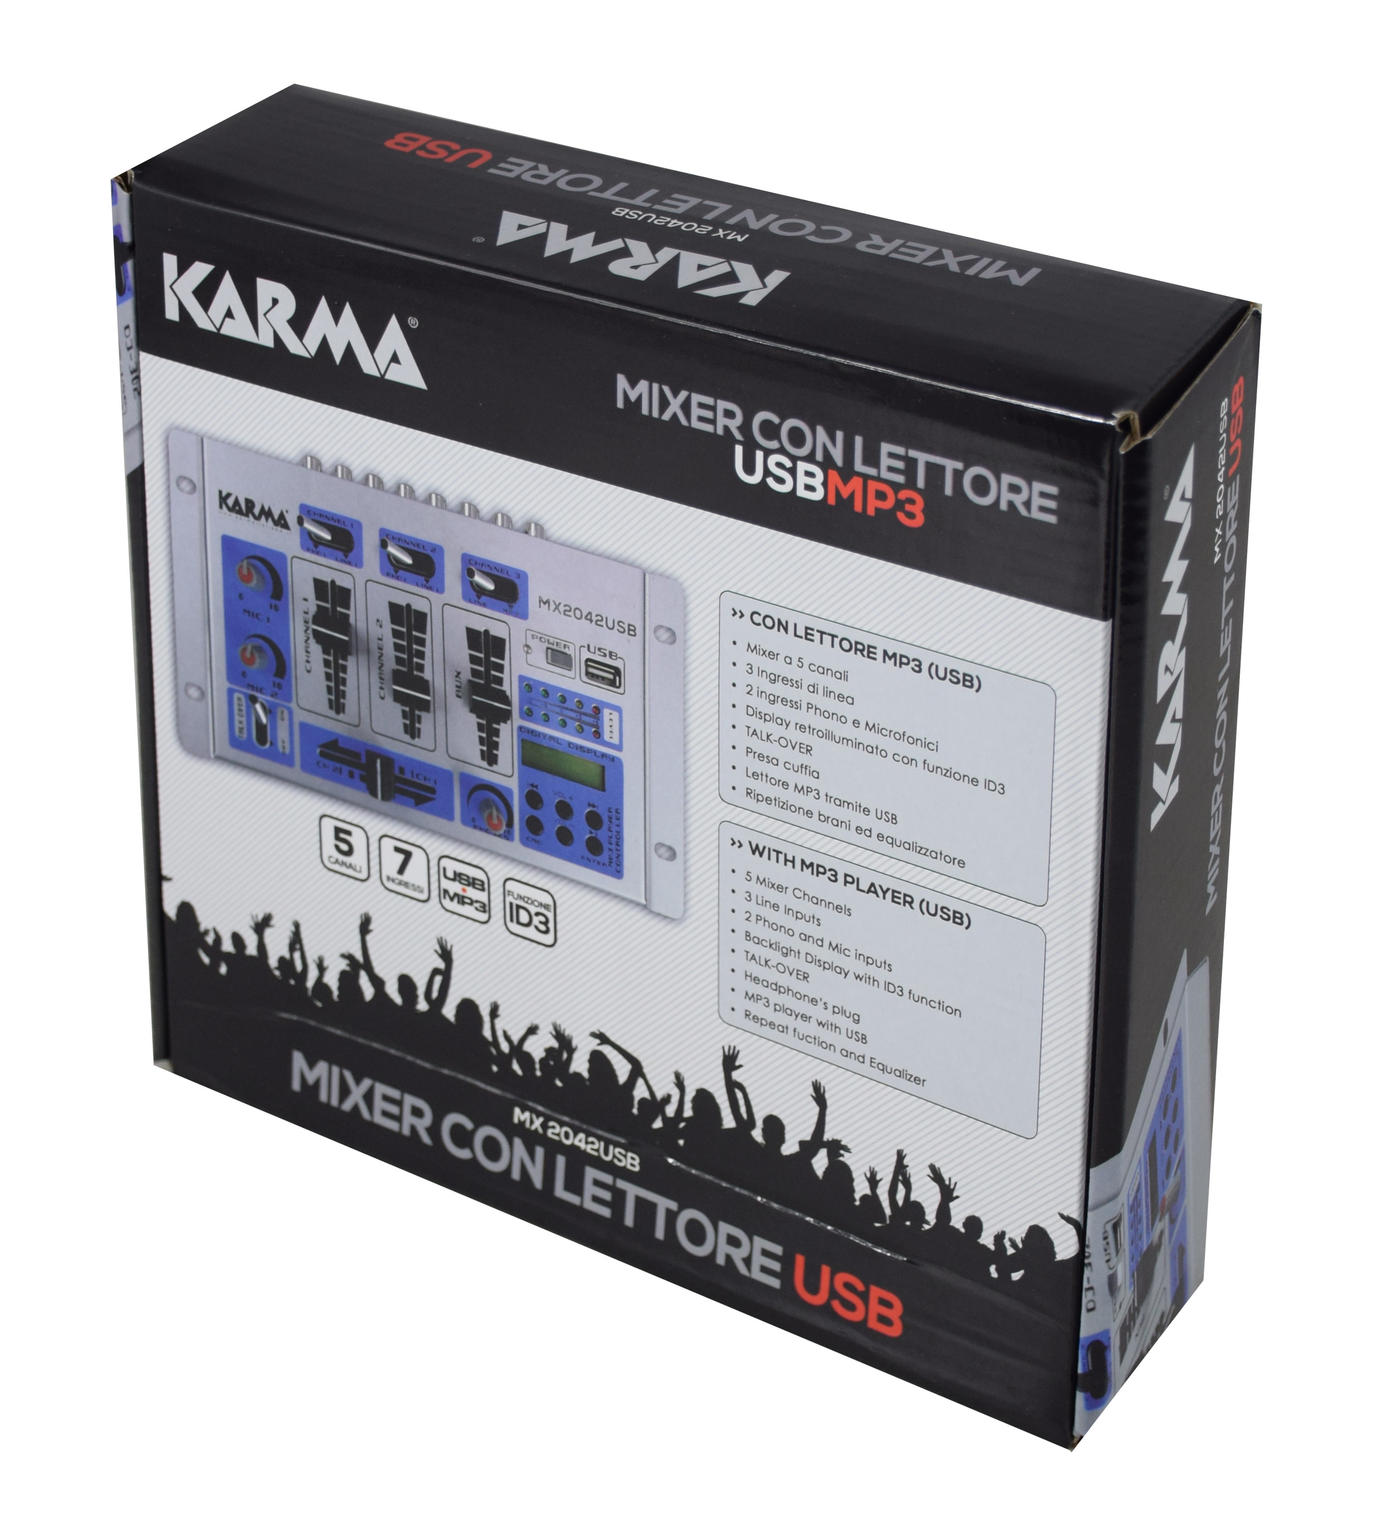 Karma MX 2042USB